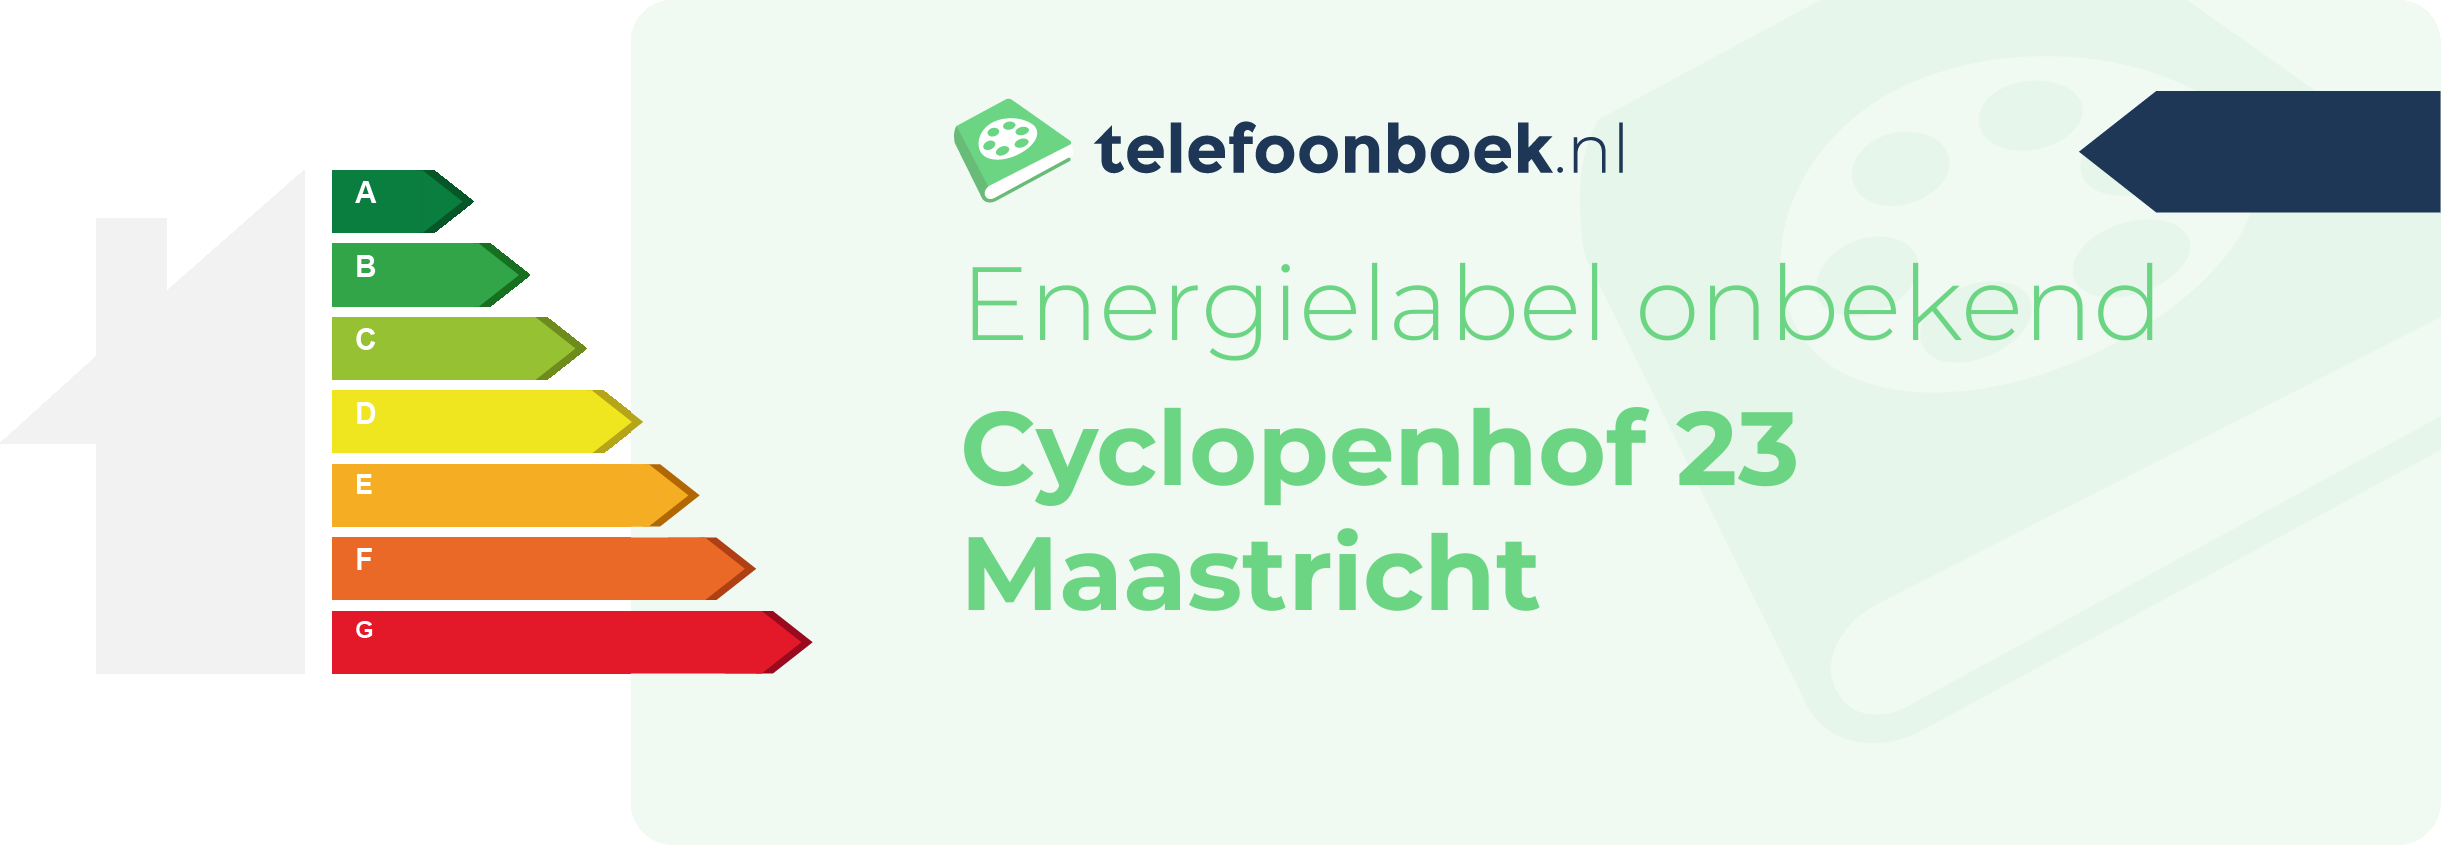 Energielabel Cyclopenhof 23 Maastricht